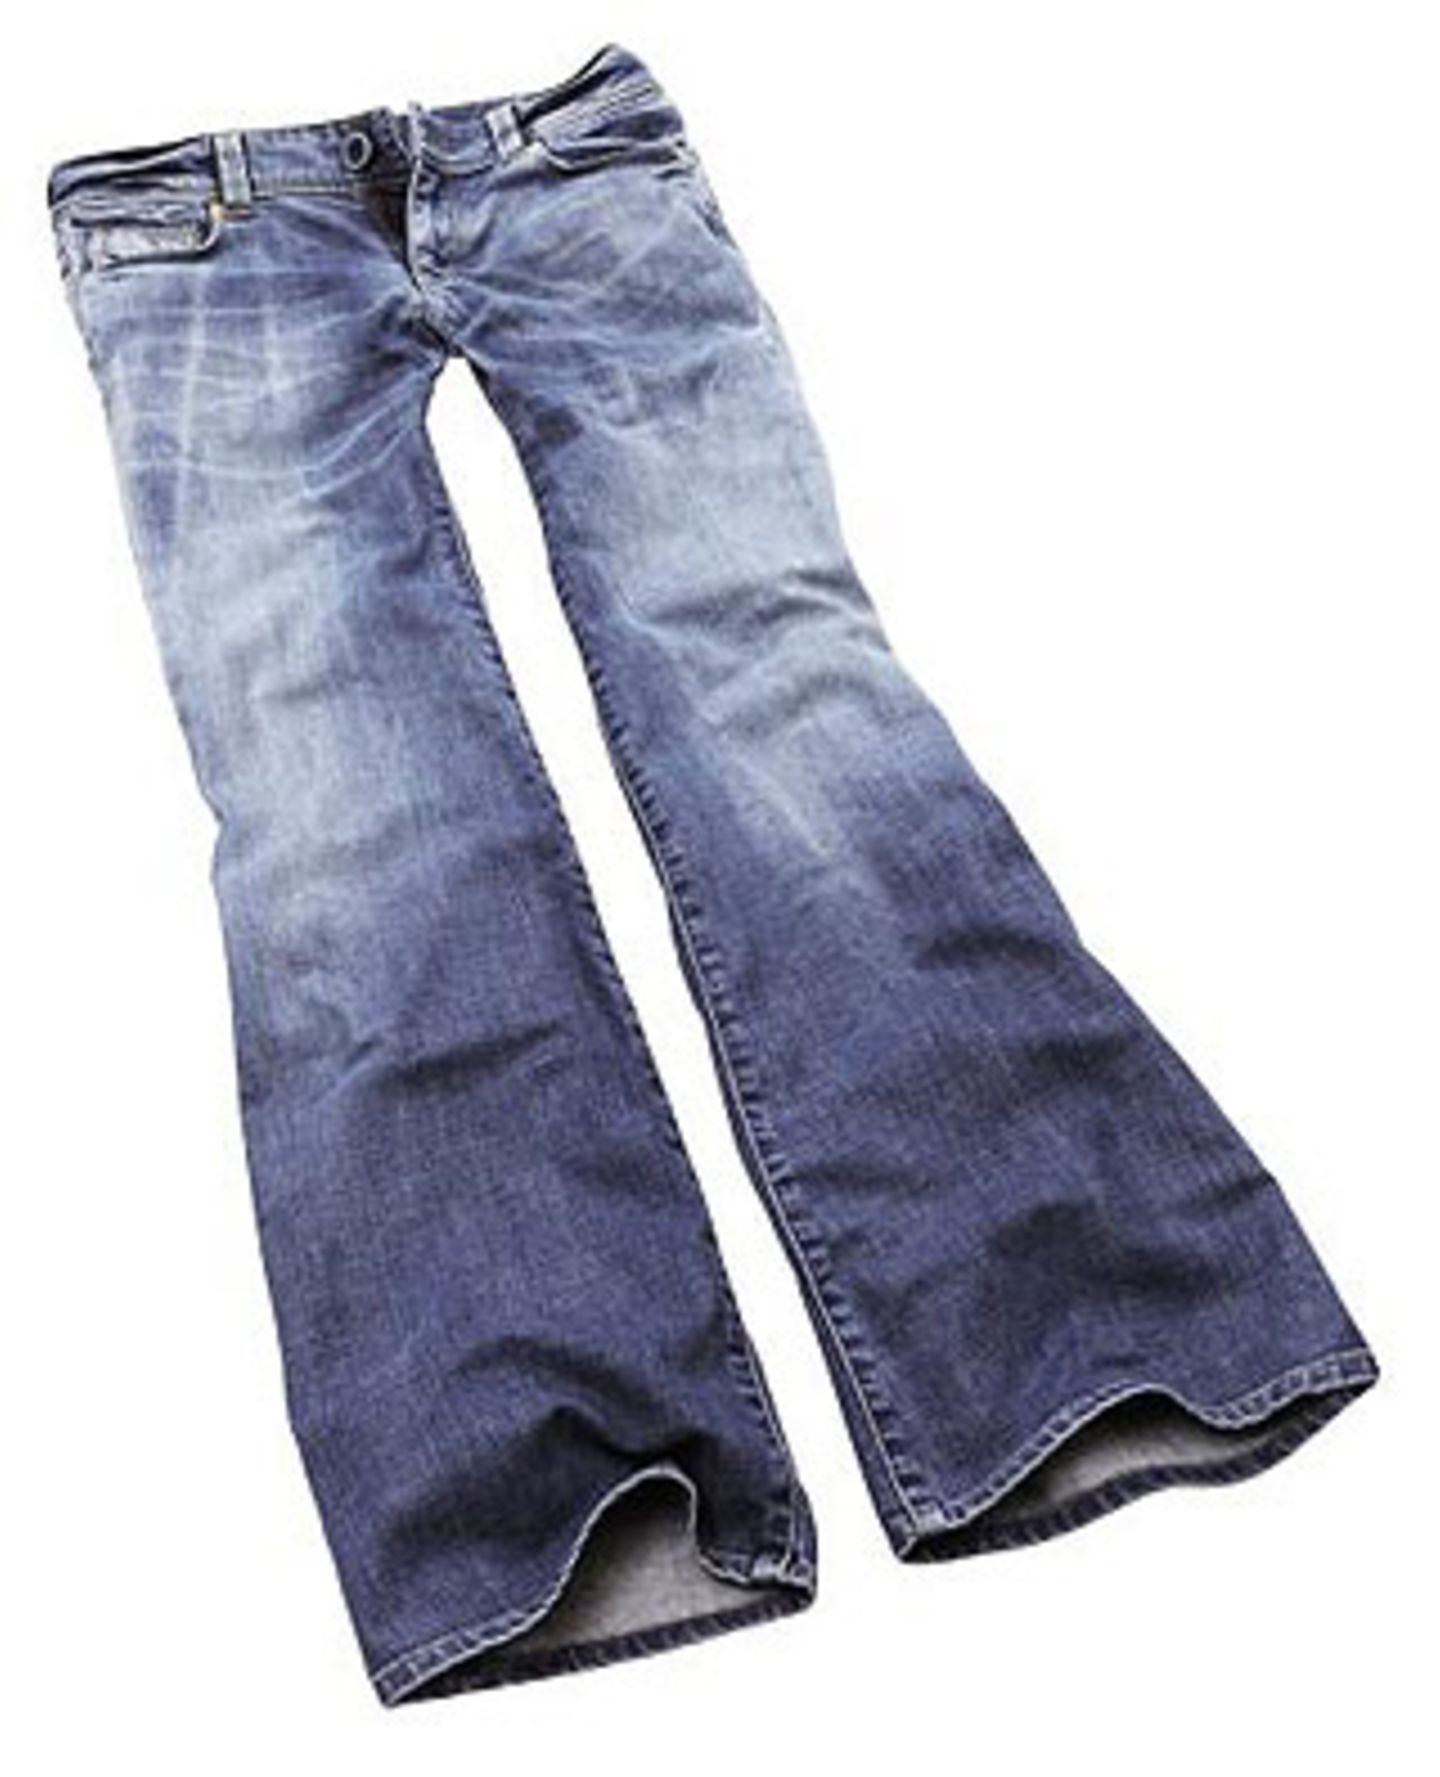 Jeans aus der Organic Cotton Kollektion; 39,90 Euro; über H&M